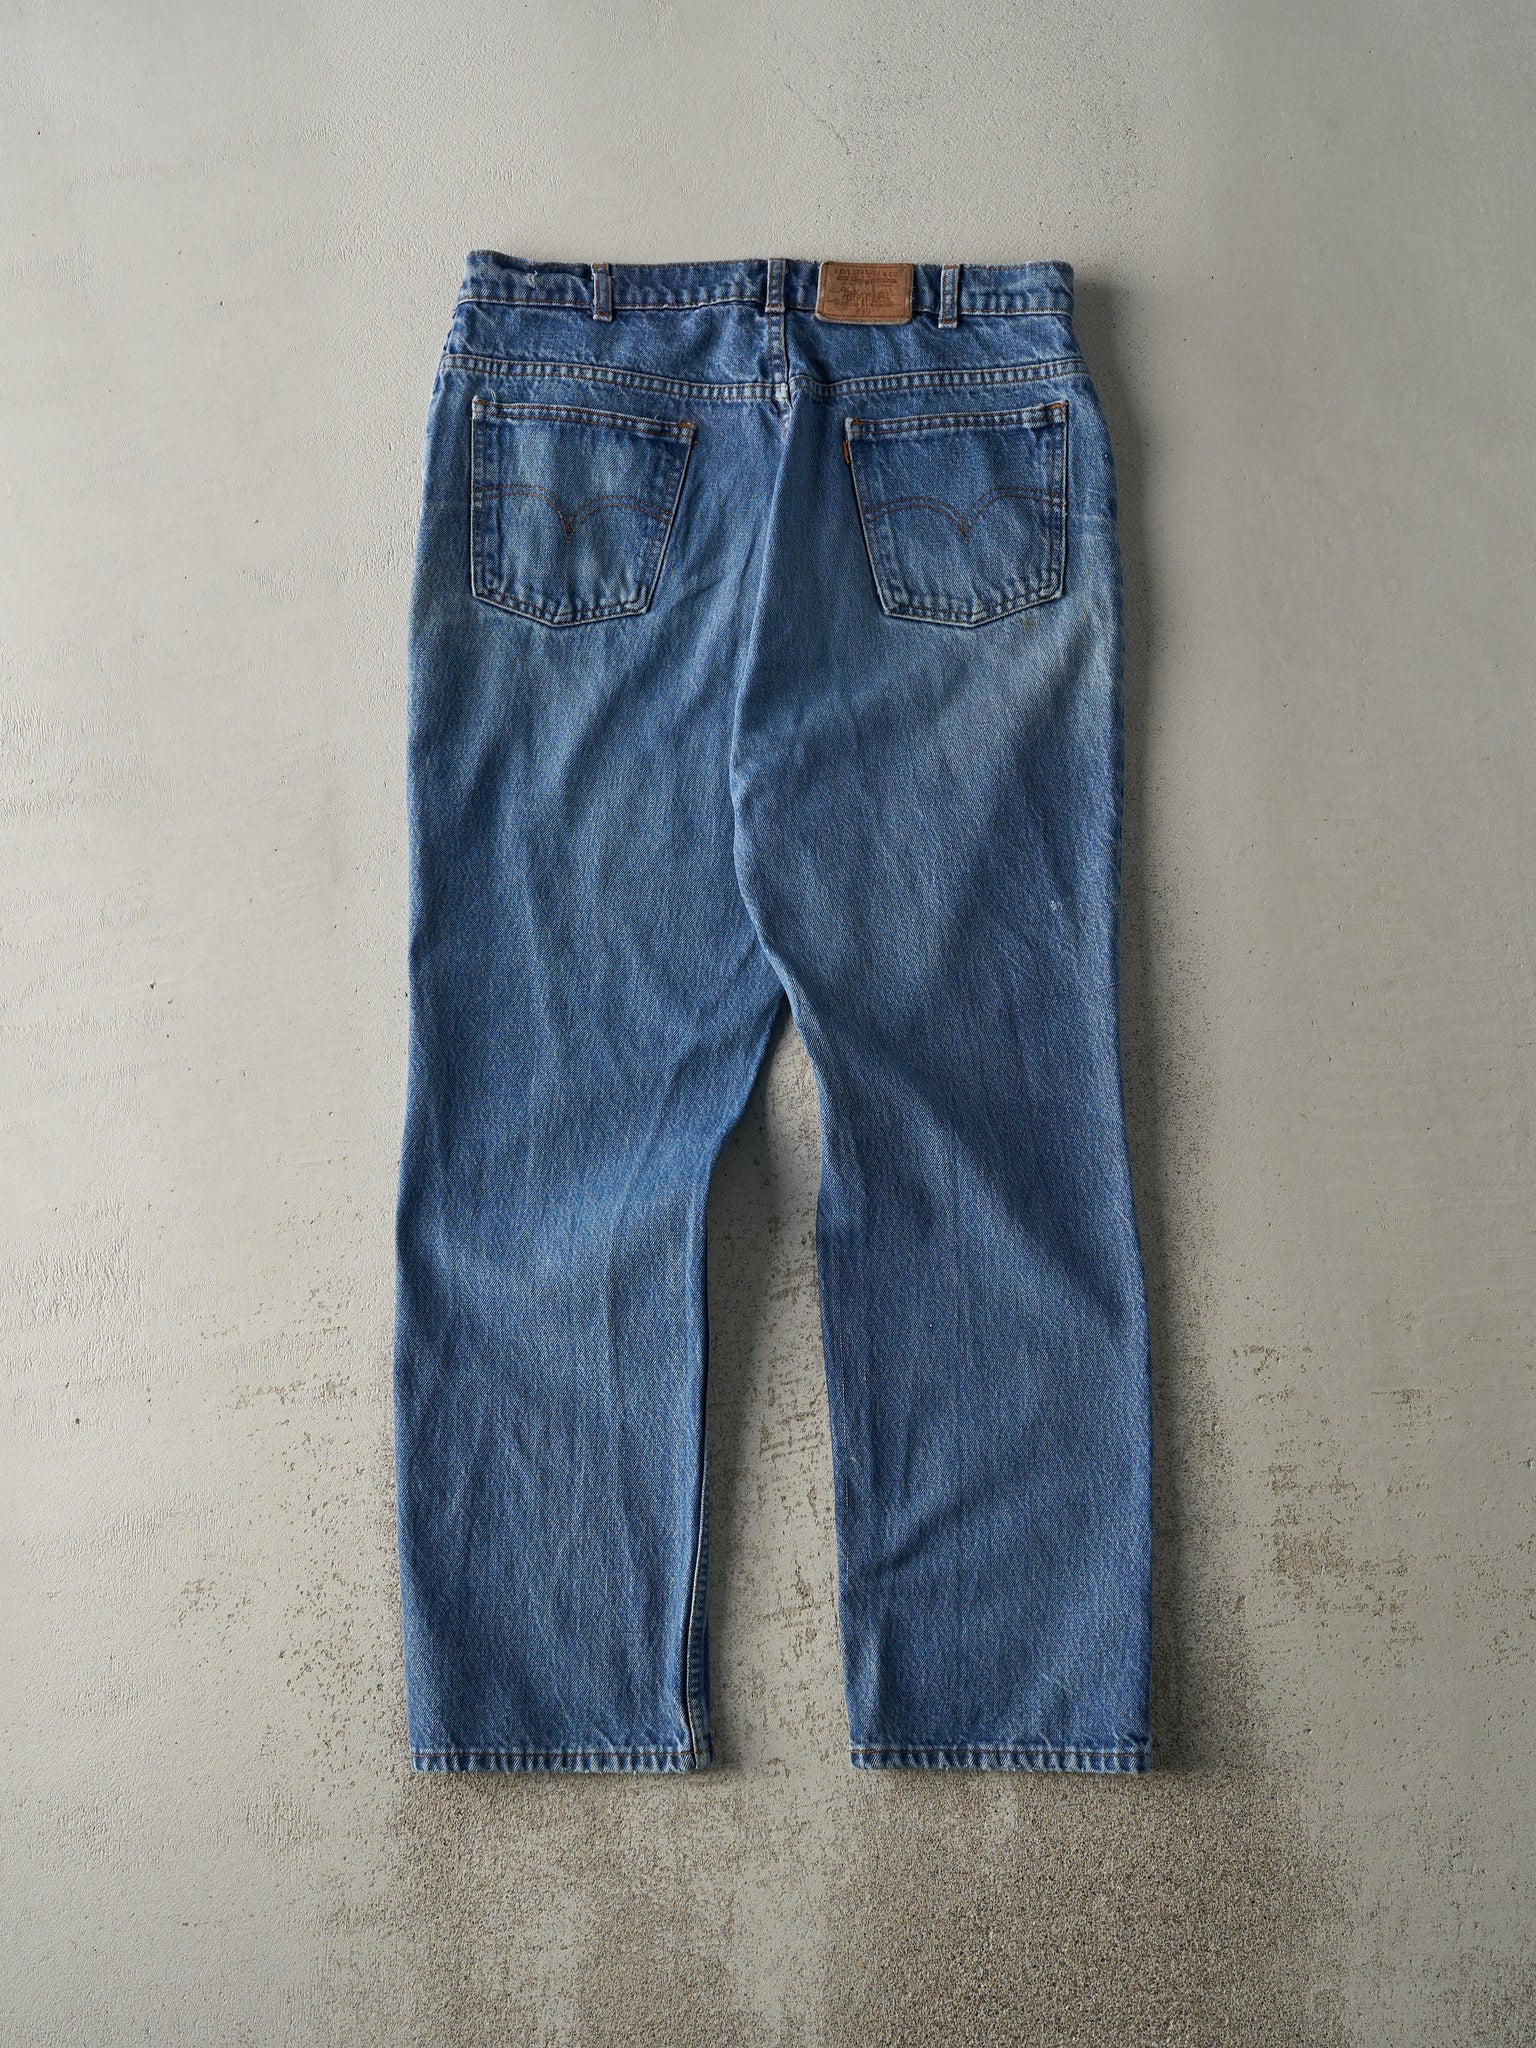 Vintage 80s Mid Wash Levi's Orange Tab 619 Jeans (35.5x30)